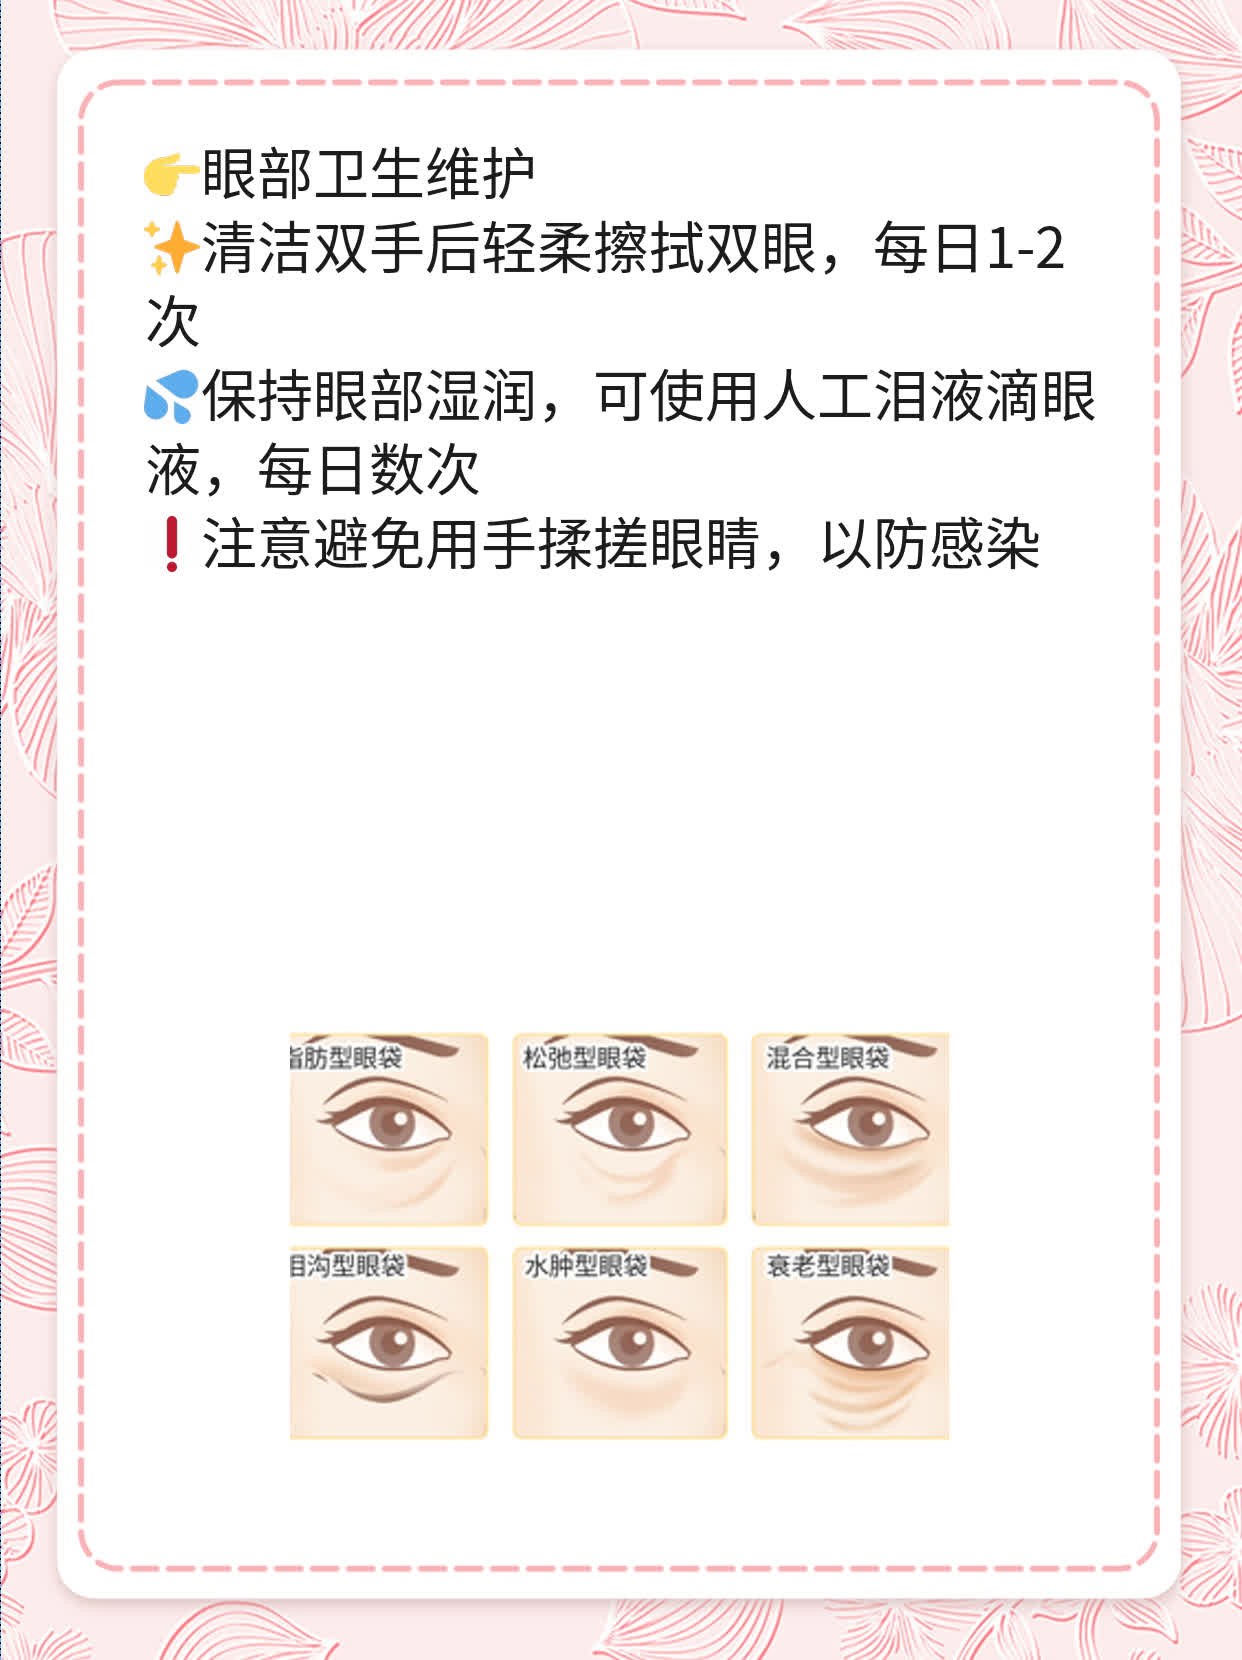 「眼睛问题」：左眼流 vs 右眼泪？